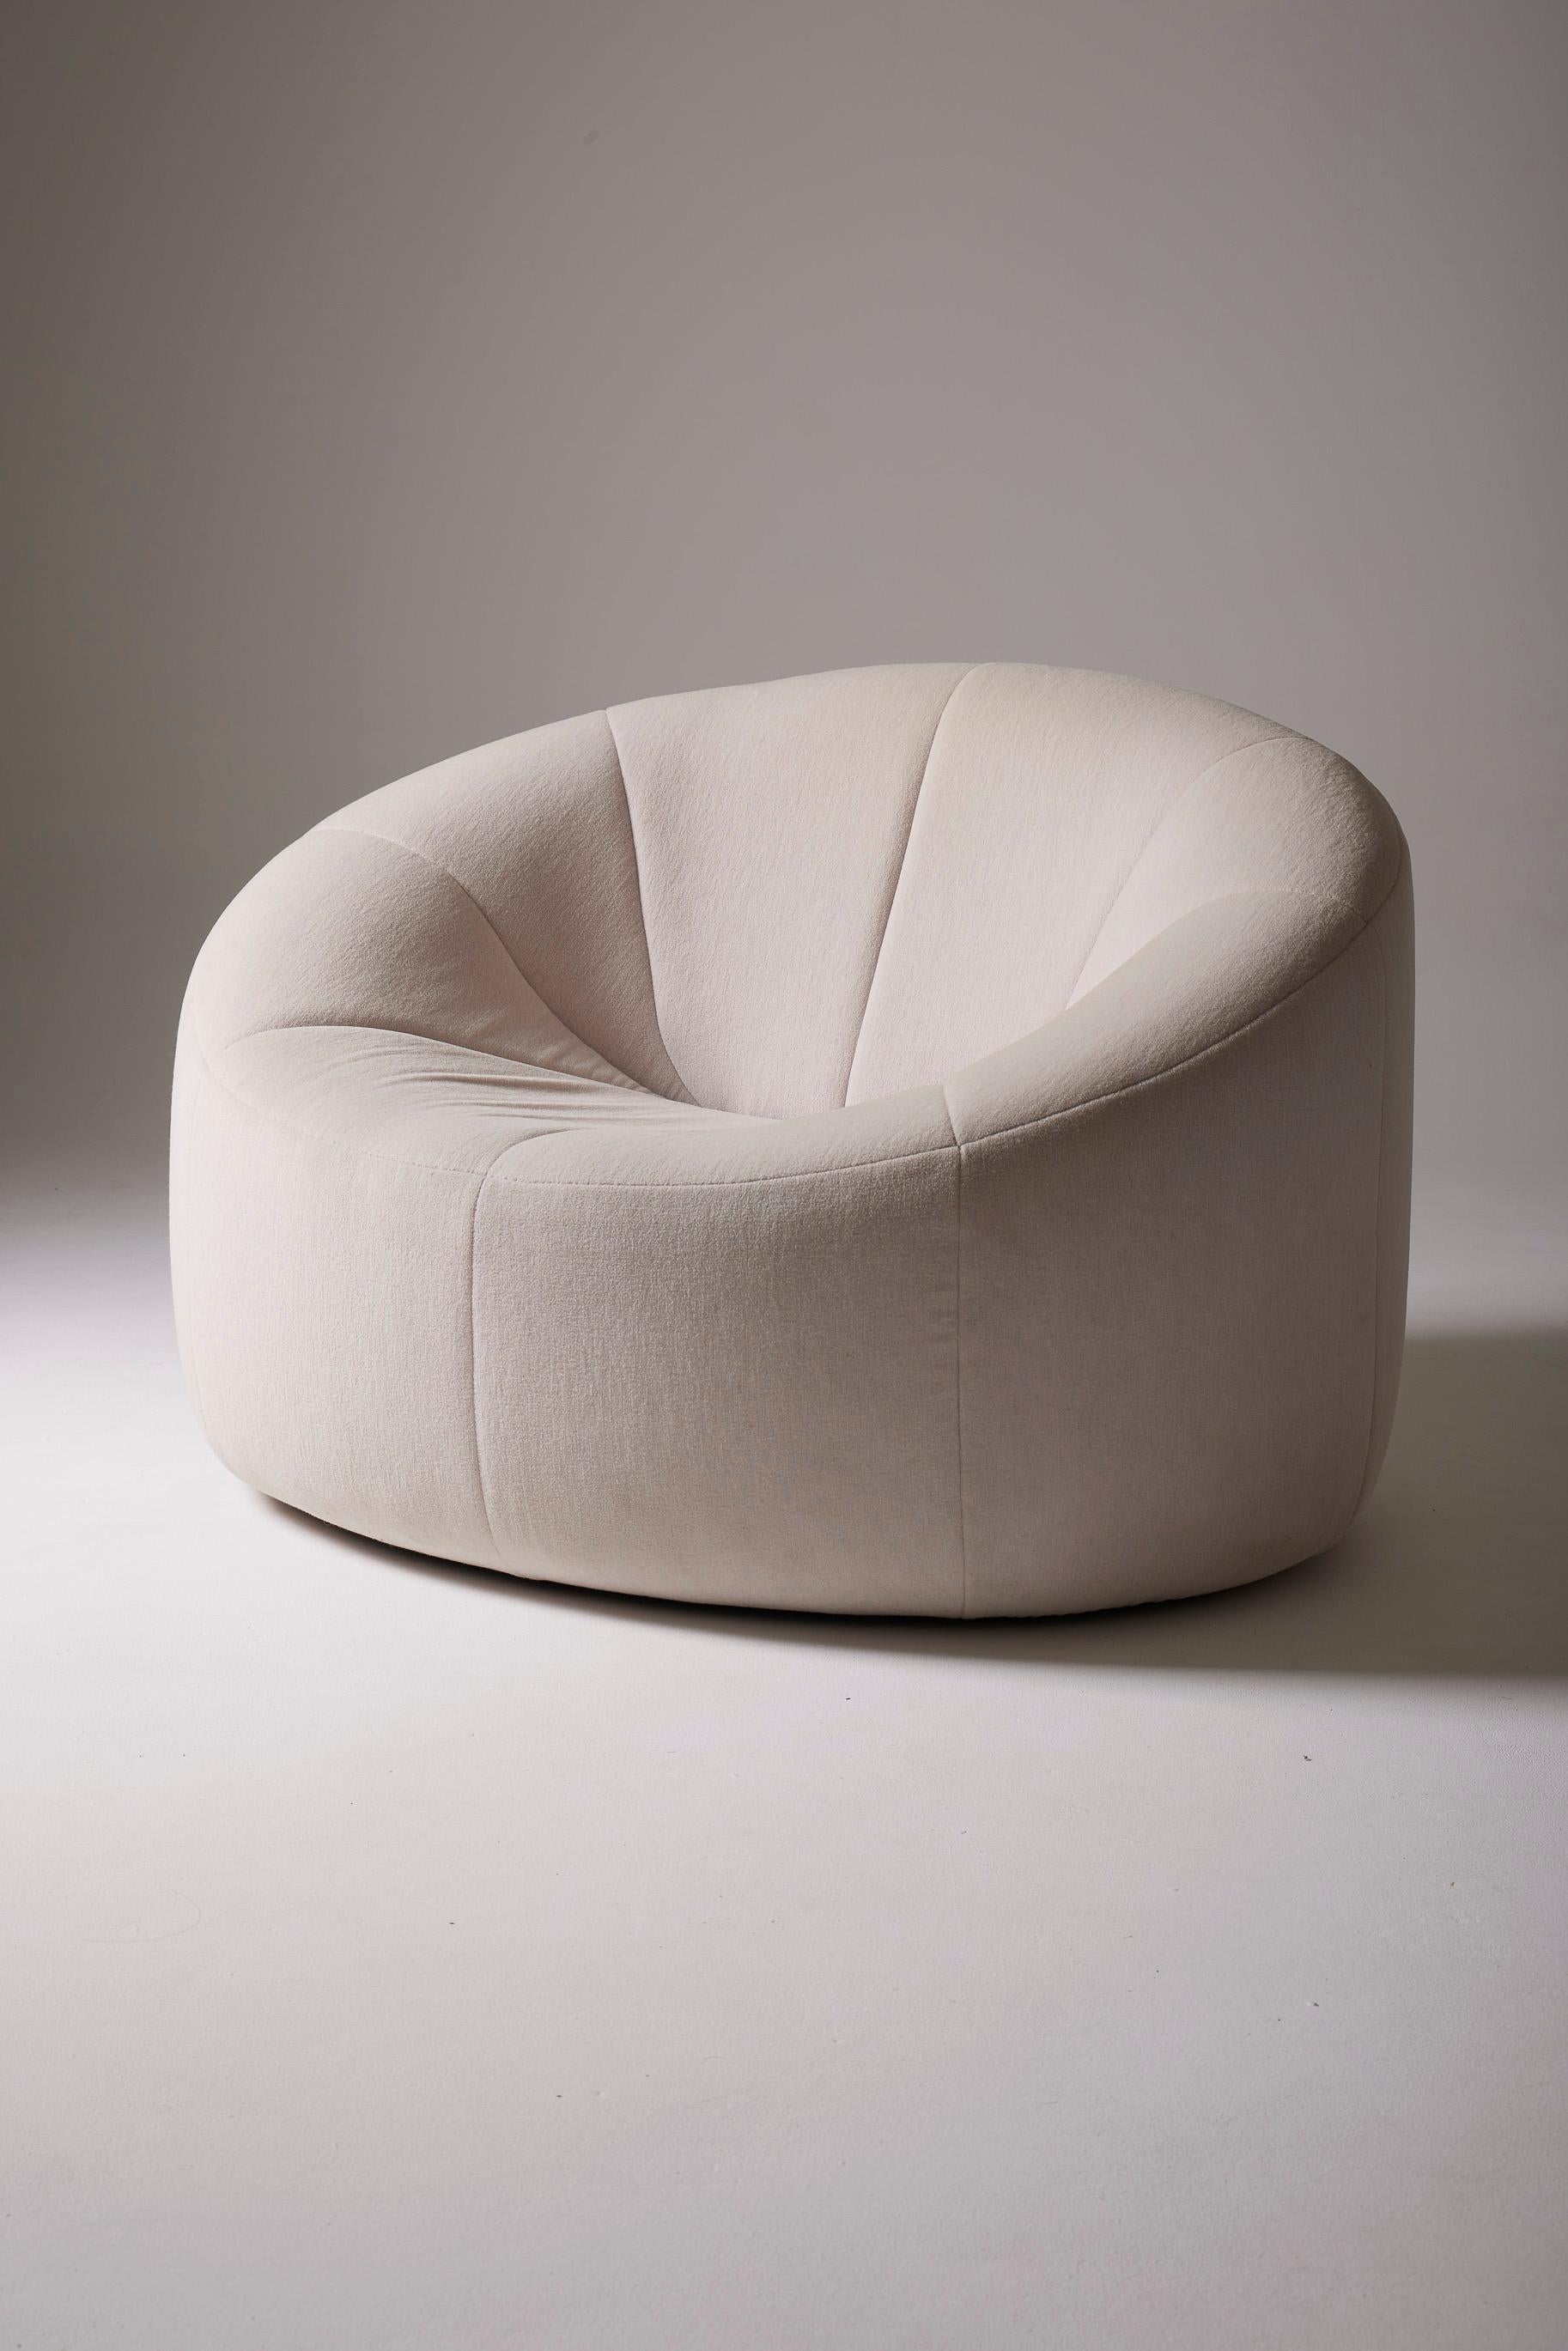 Der ikonische Sessel Pumpkin wurde 1970 von Pierre Paulin entworfen und von Ligne Roset hergestellt. Original weißer Stoff, sehr guter Zustand. Dieses Modell wurde ursprünglich für die Privatwohnung von Claude und Georges Pompidou im Élysée-Palast